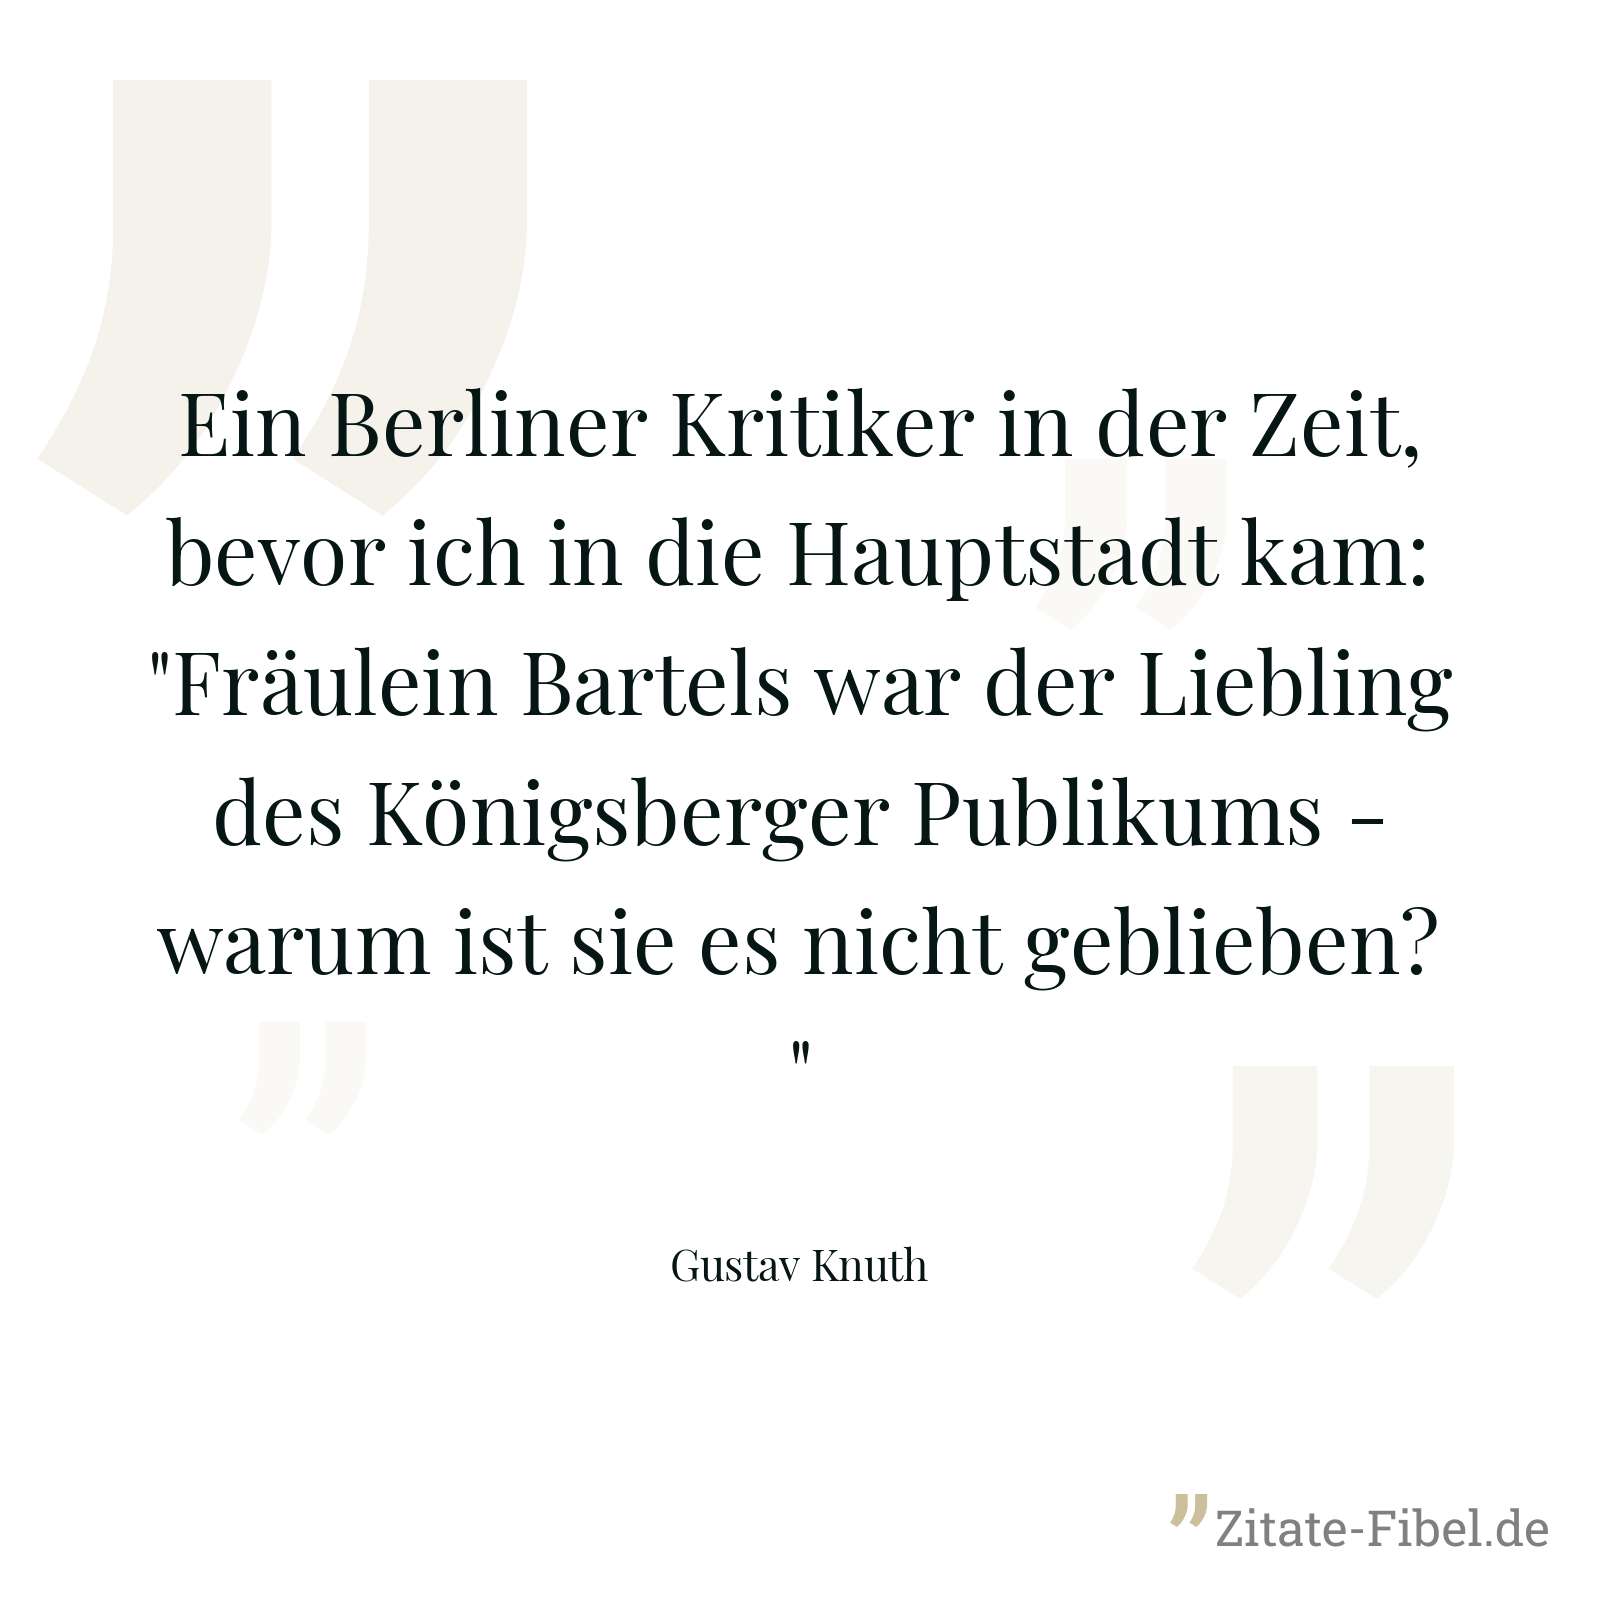 Ein Berliner Kritiker in der Zeit, bevor ich in die Hauptstadt kam: "Fräulein Bartels war der Liebling des Königsberger Publikums - warum ist sie es nicht geblieben?" - Gustav Knuth